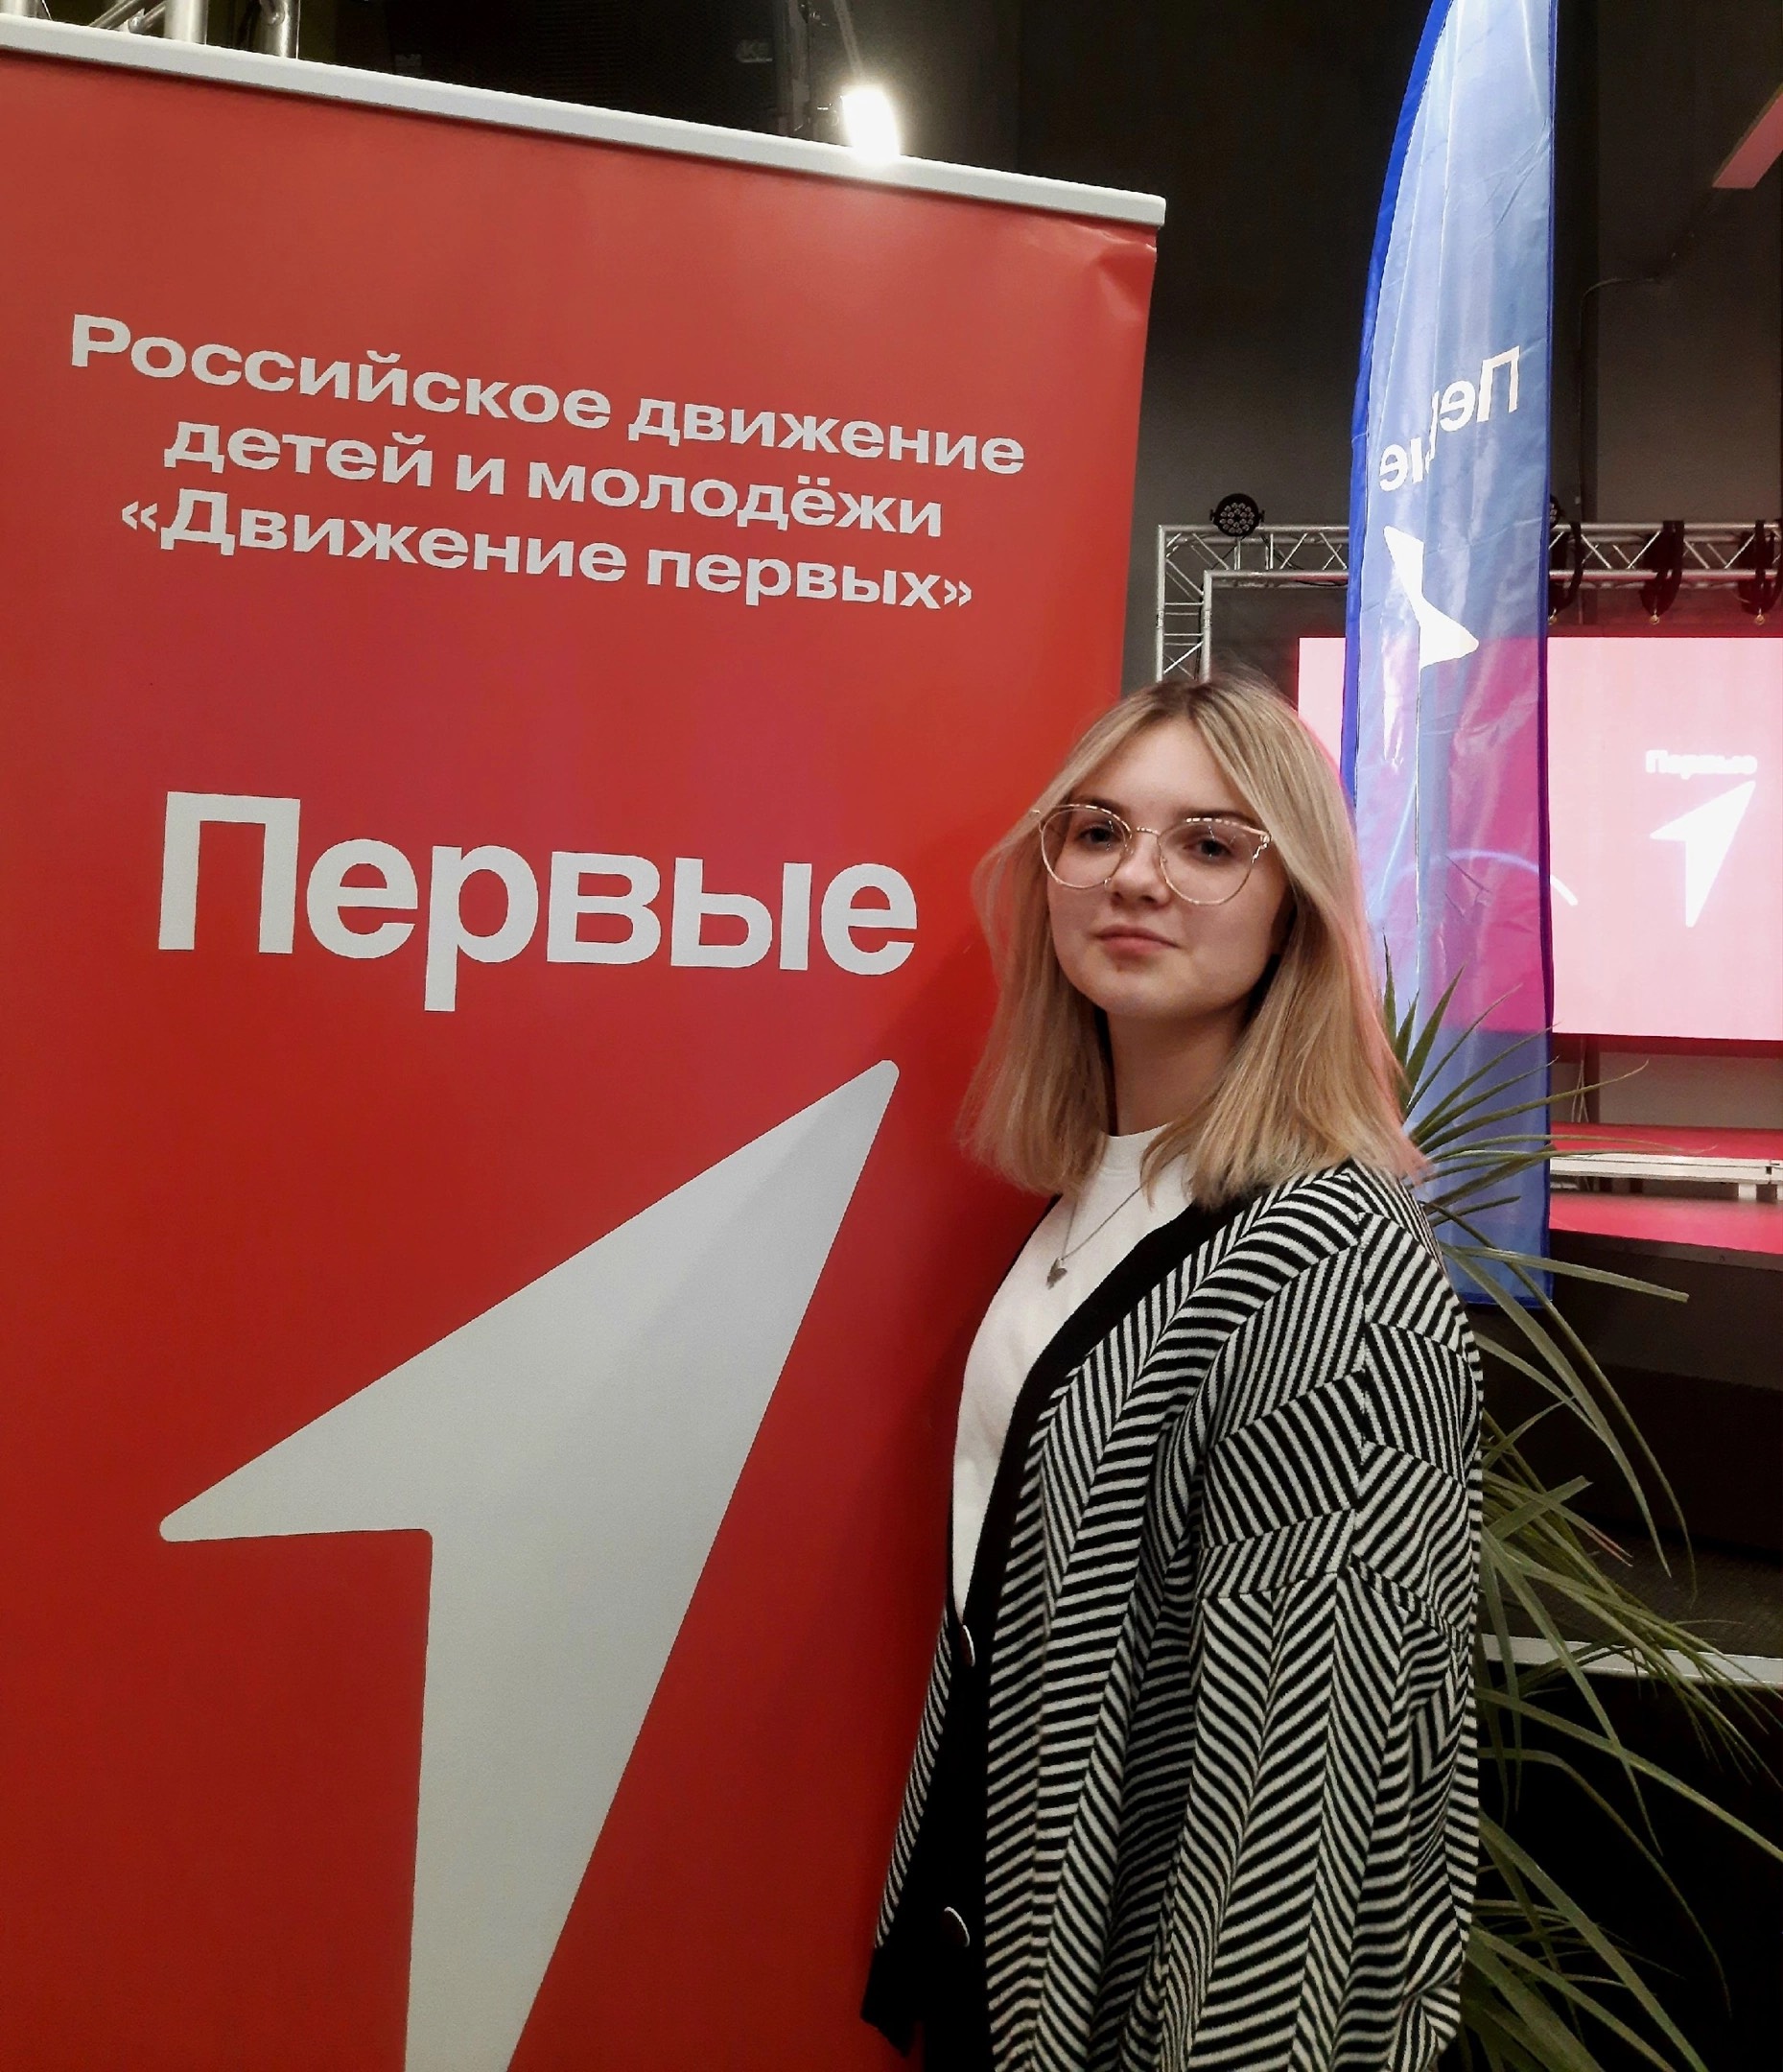 Выборы лидера первичного отделения Движение Первых города Белгорода.